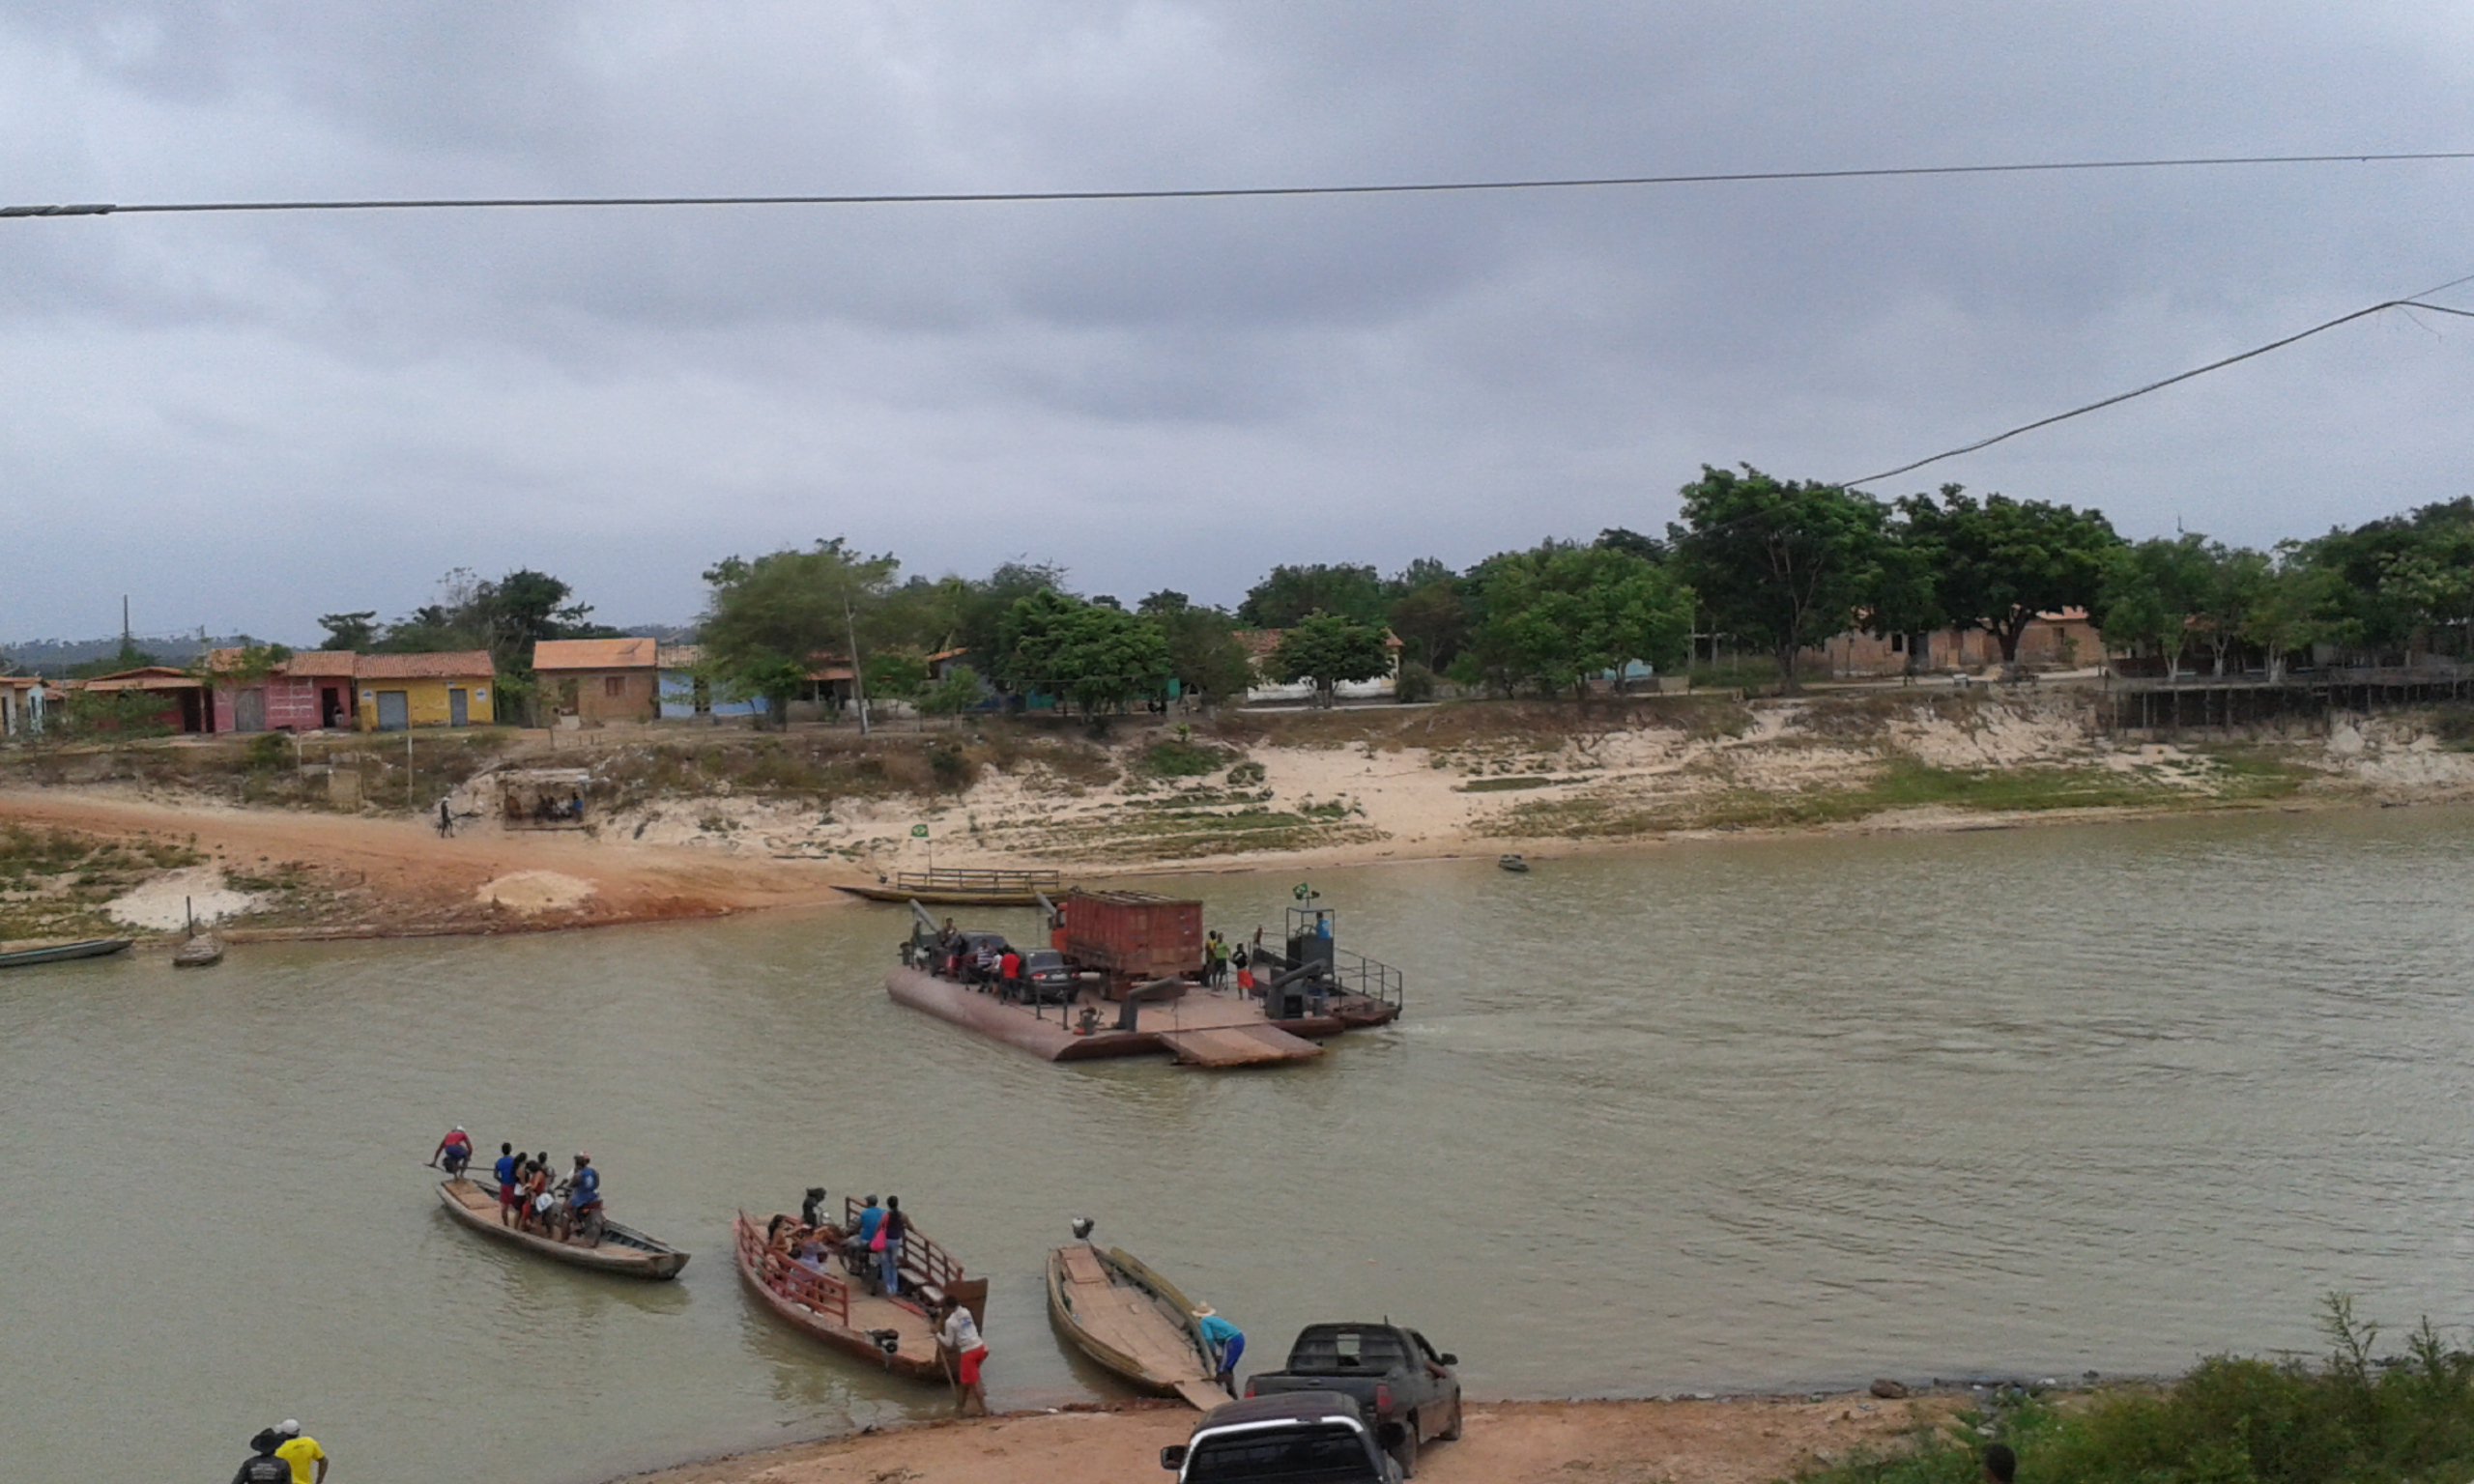 “Aqui já era pra ter uma ponte”, dizem motoristas que aguardaram horas para atravessar o Rio Pindaré